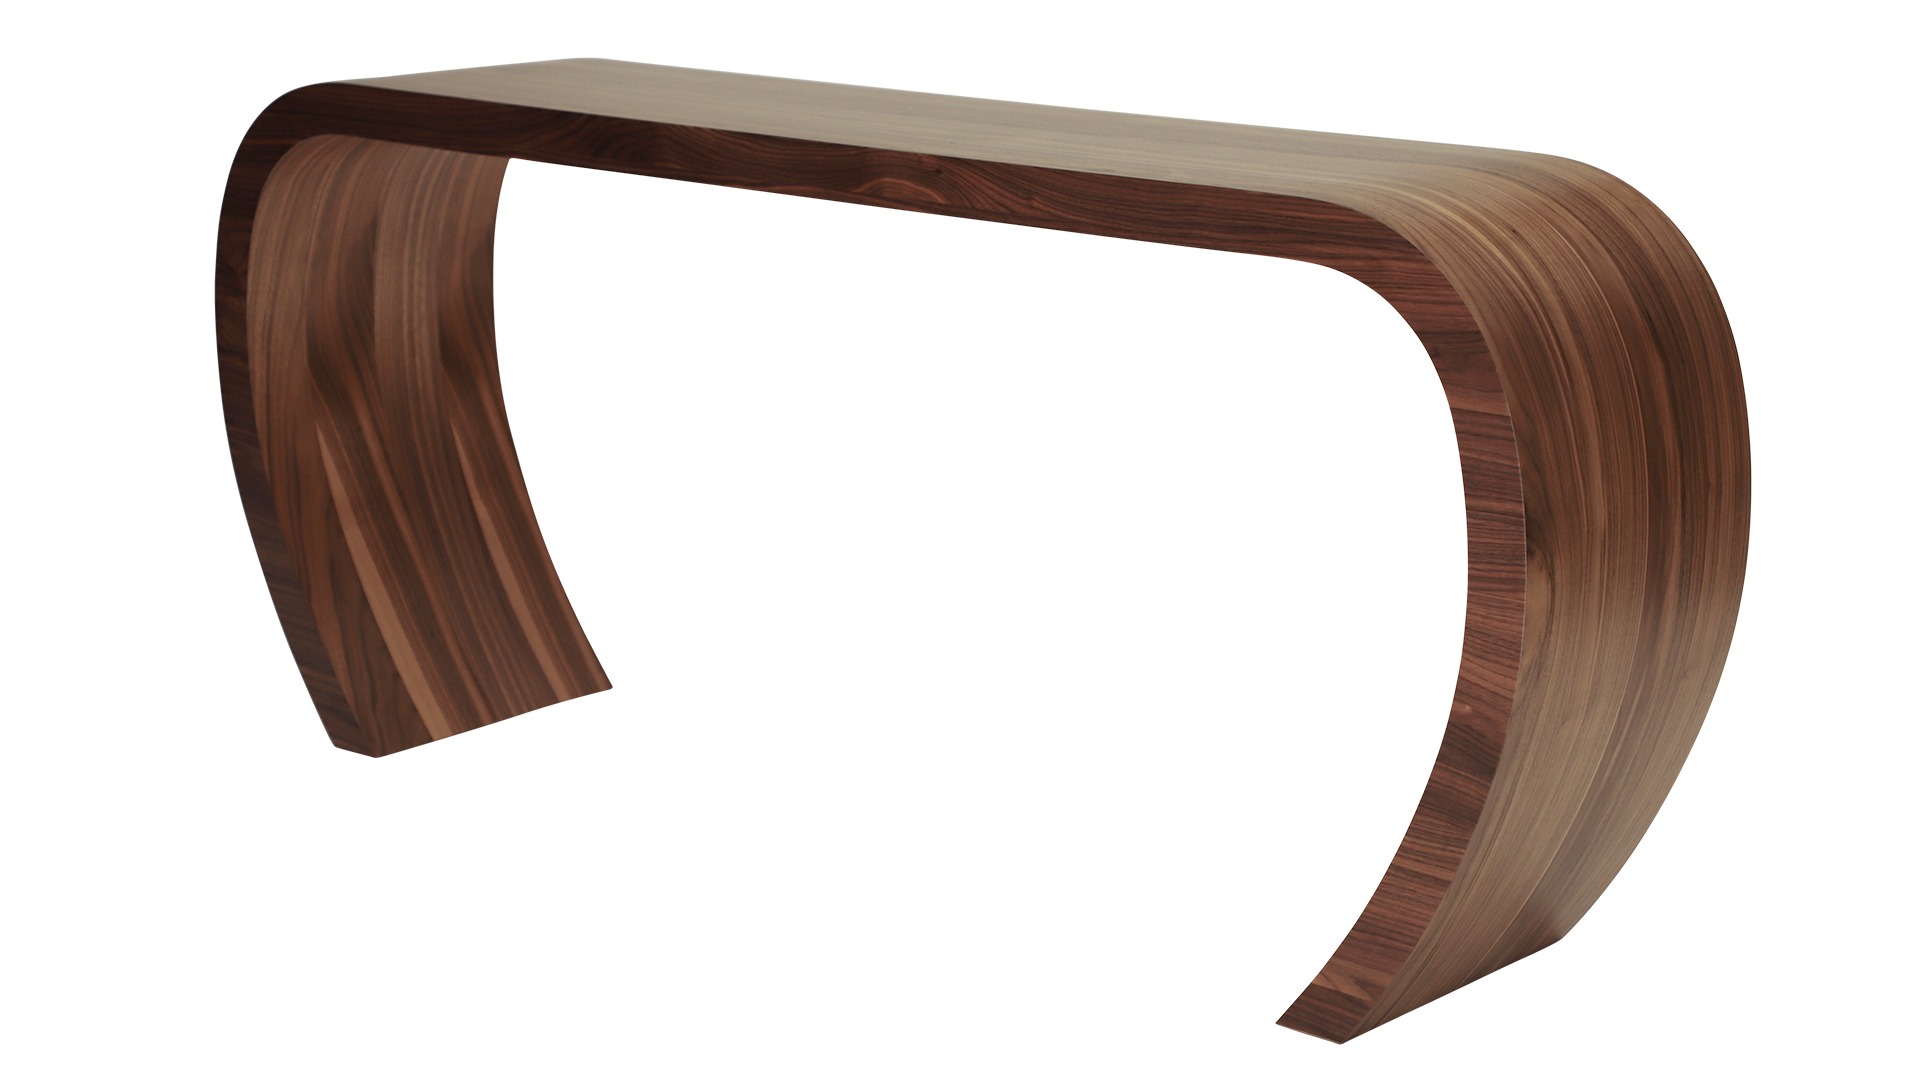 Das Sideboard Sidebow überzeugt mit seiner besonderen Form. Gefertigt wurde das Sideboard aus Echtholzfurnier. Die Farbe ist Nussbaum. Es ist ein Produkt der Marke Jan Kurtz und hat eine Breite von 168 cm.